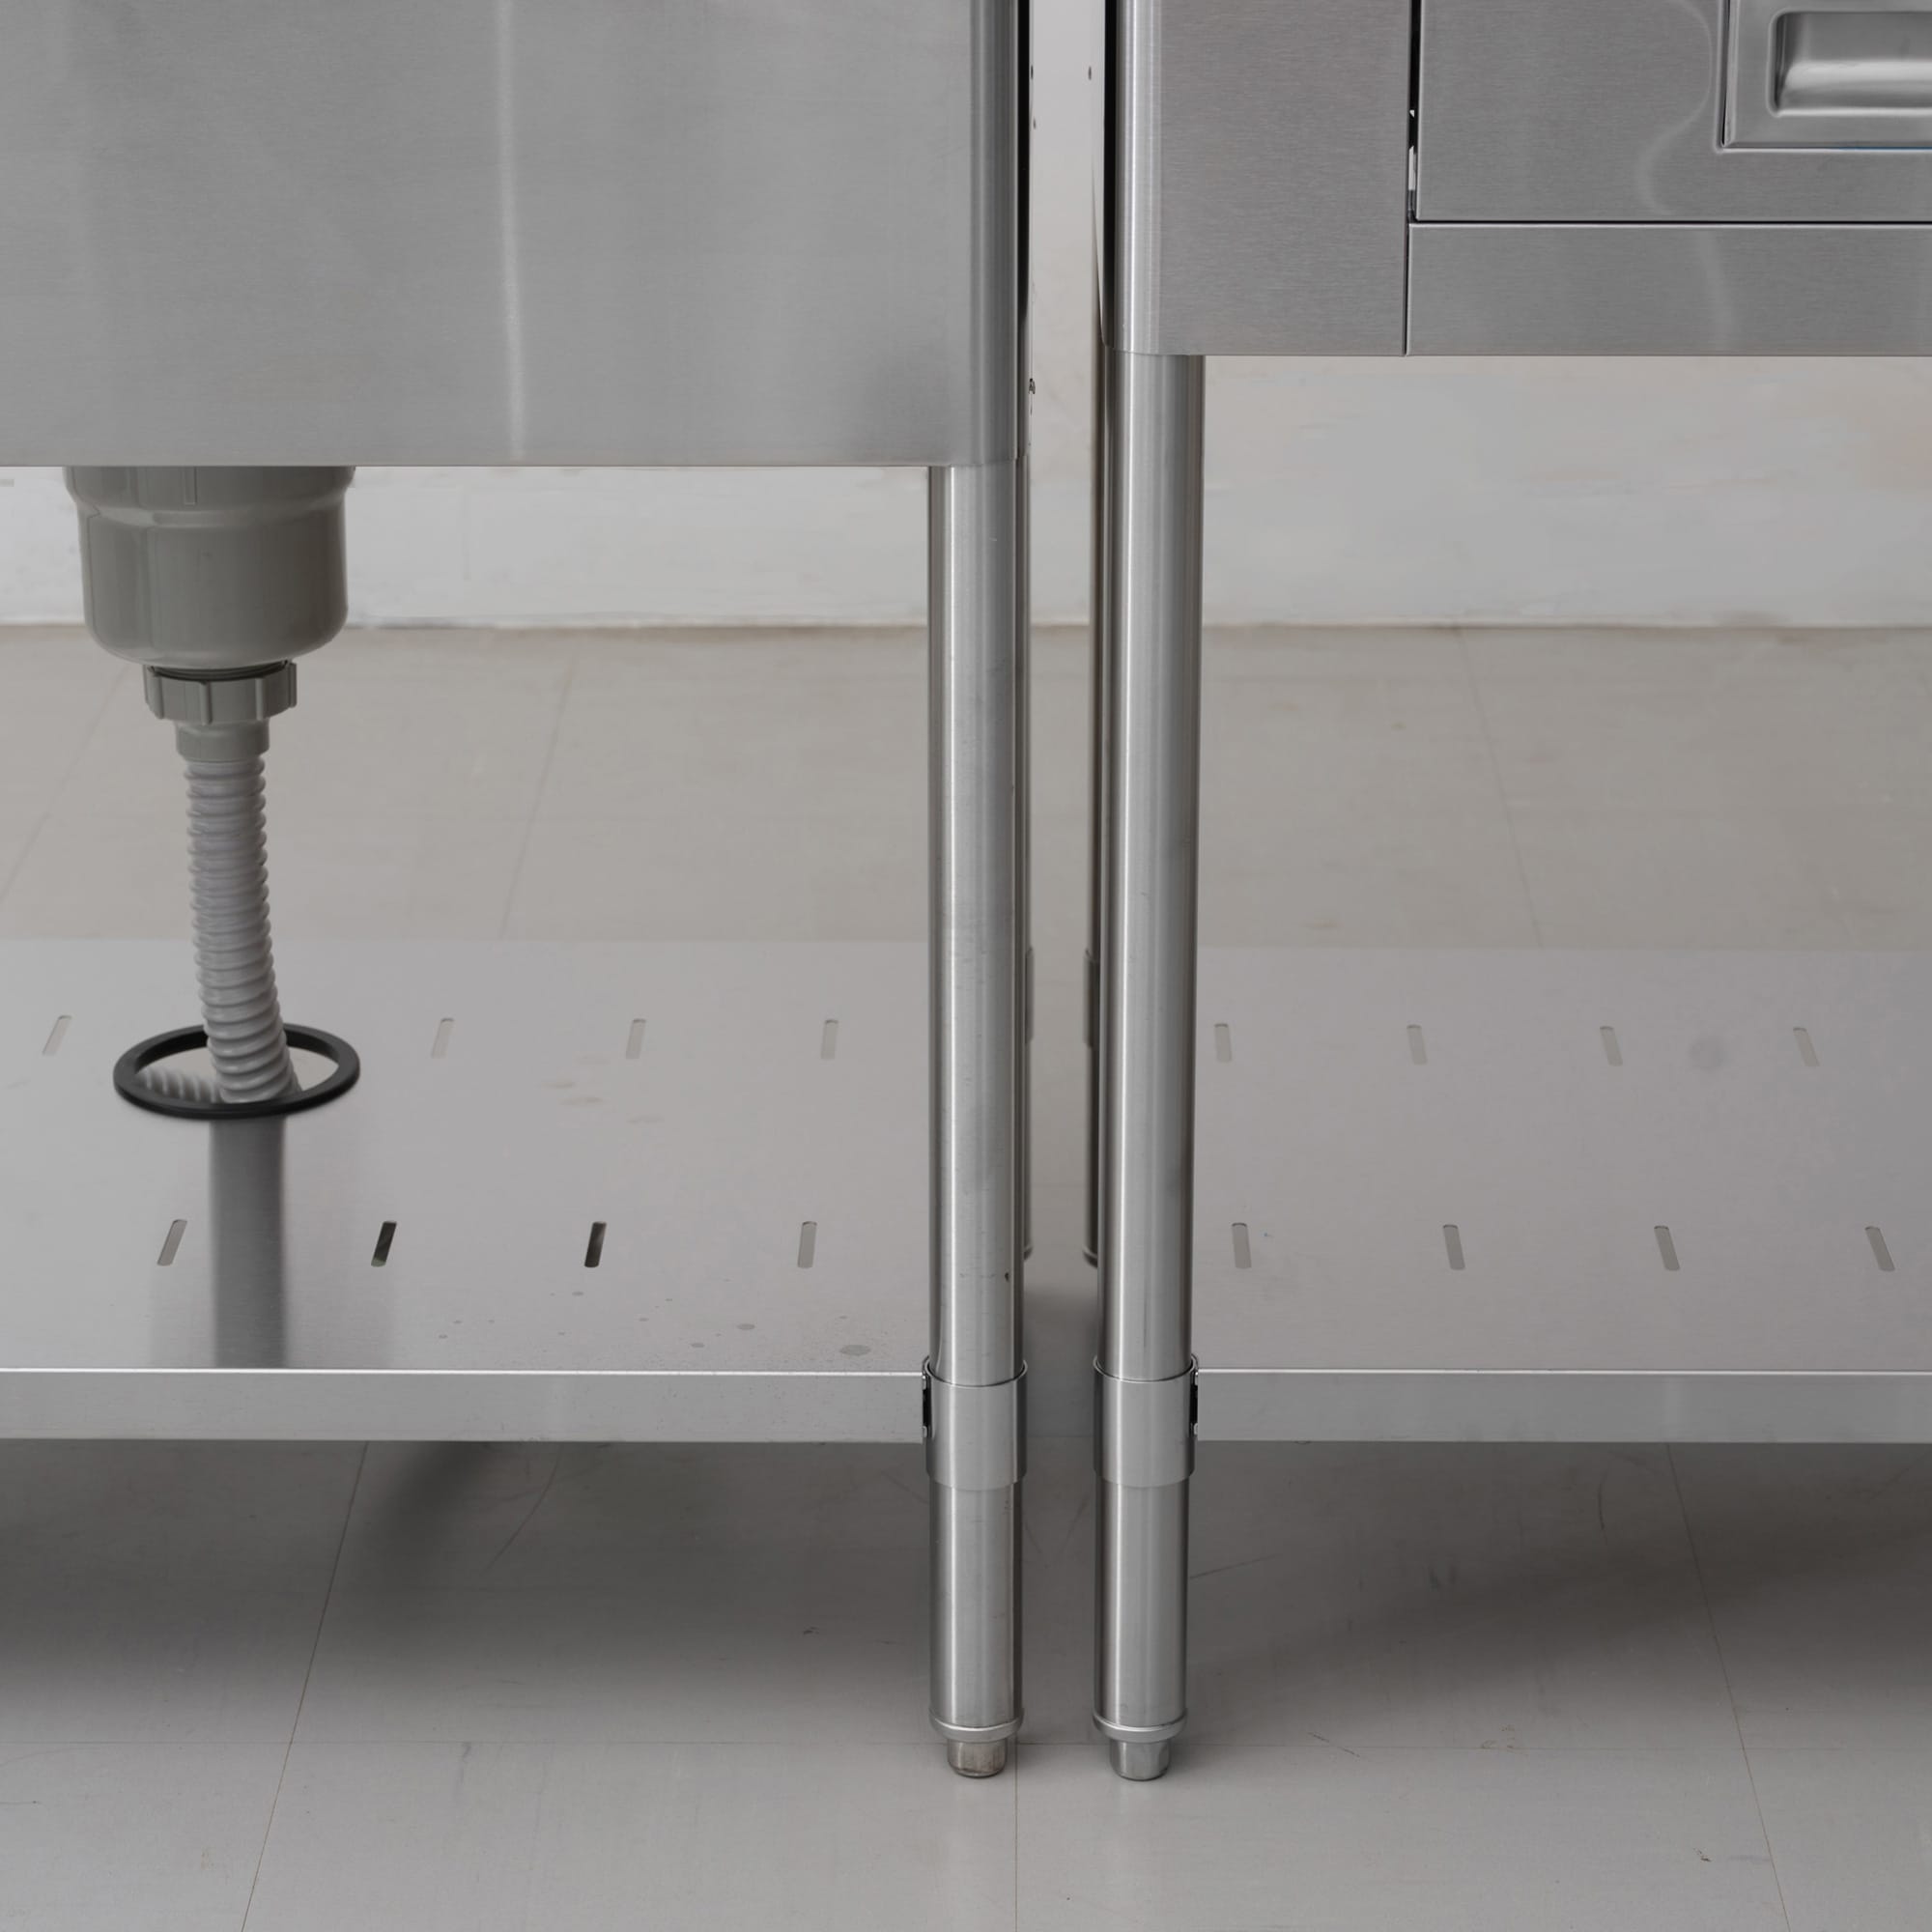 業務用キッチン 二槽シンク KB-KC025-02-G239 並べると脚と脚の間に隙間ができます